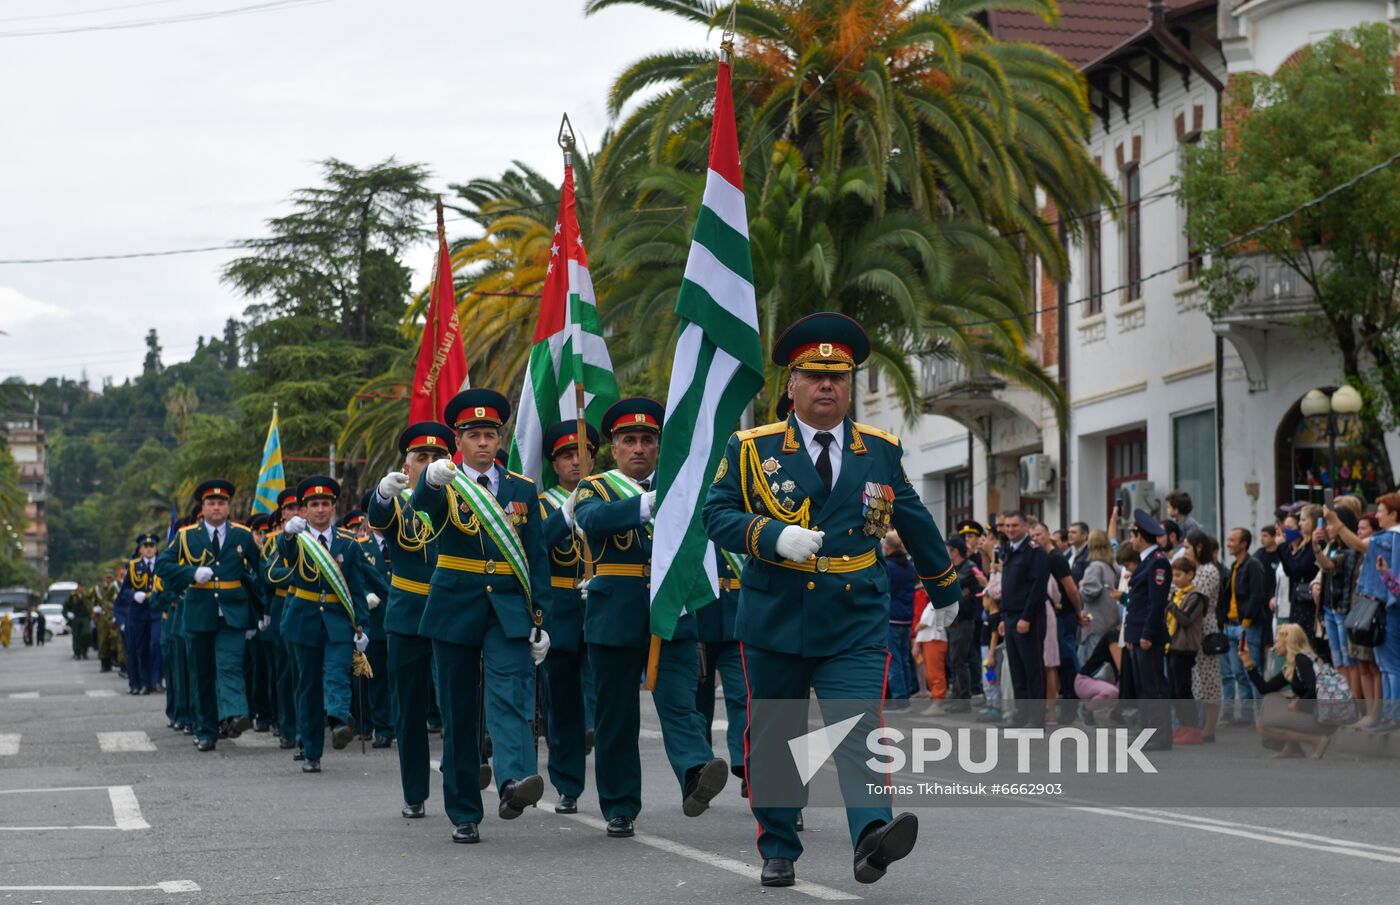 Abkhazia Independence Day